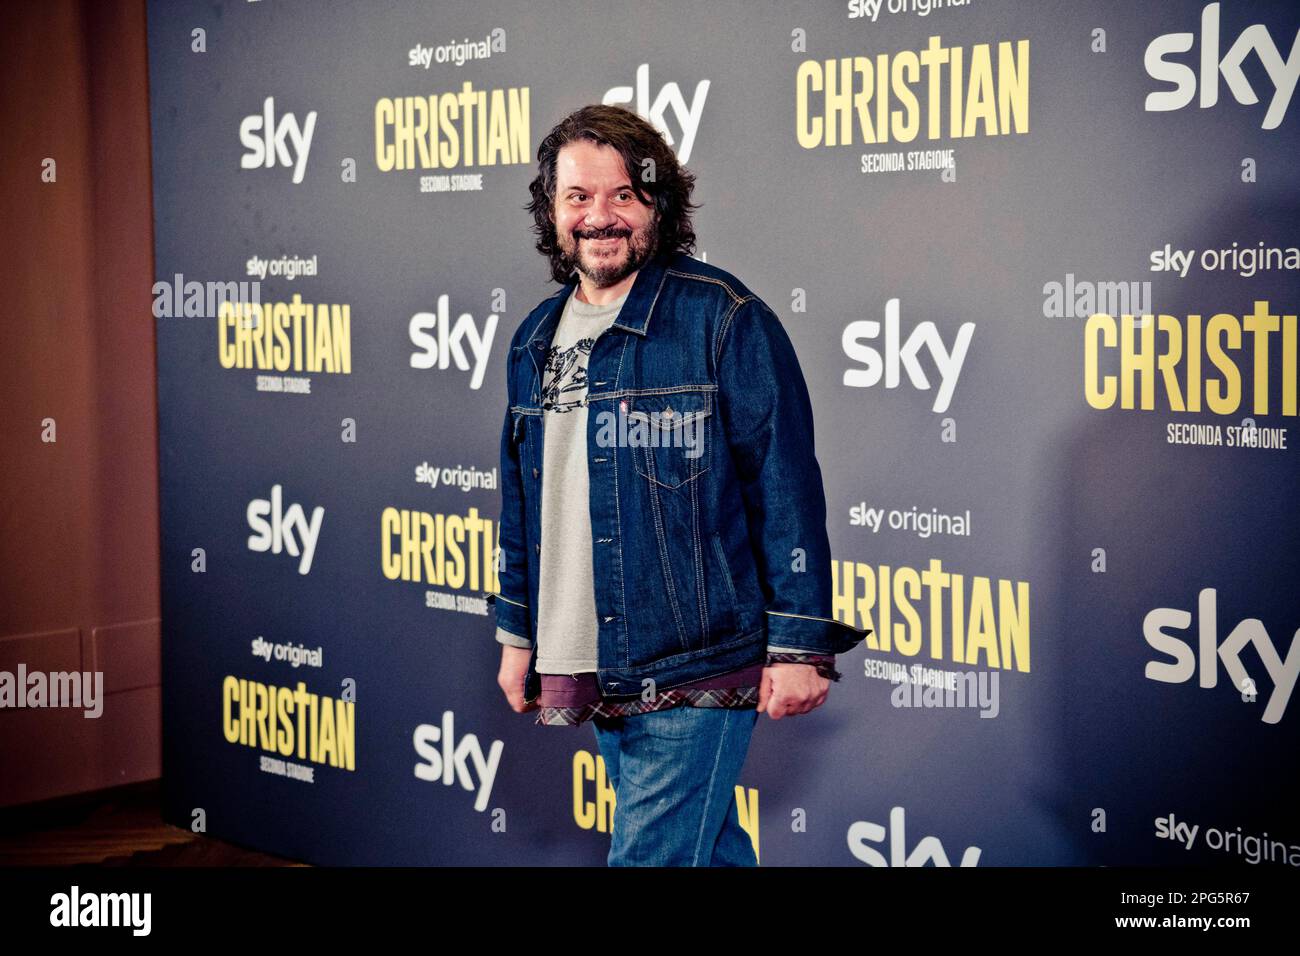 Rome, Italy, 20th March 2023, Lillo Petrolo attends the premiere of 'Christian - seconda stagione' at Cinema Barberini (Photo credits: Giovanna Onofri Stock Photo